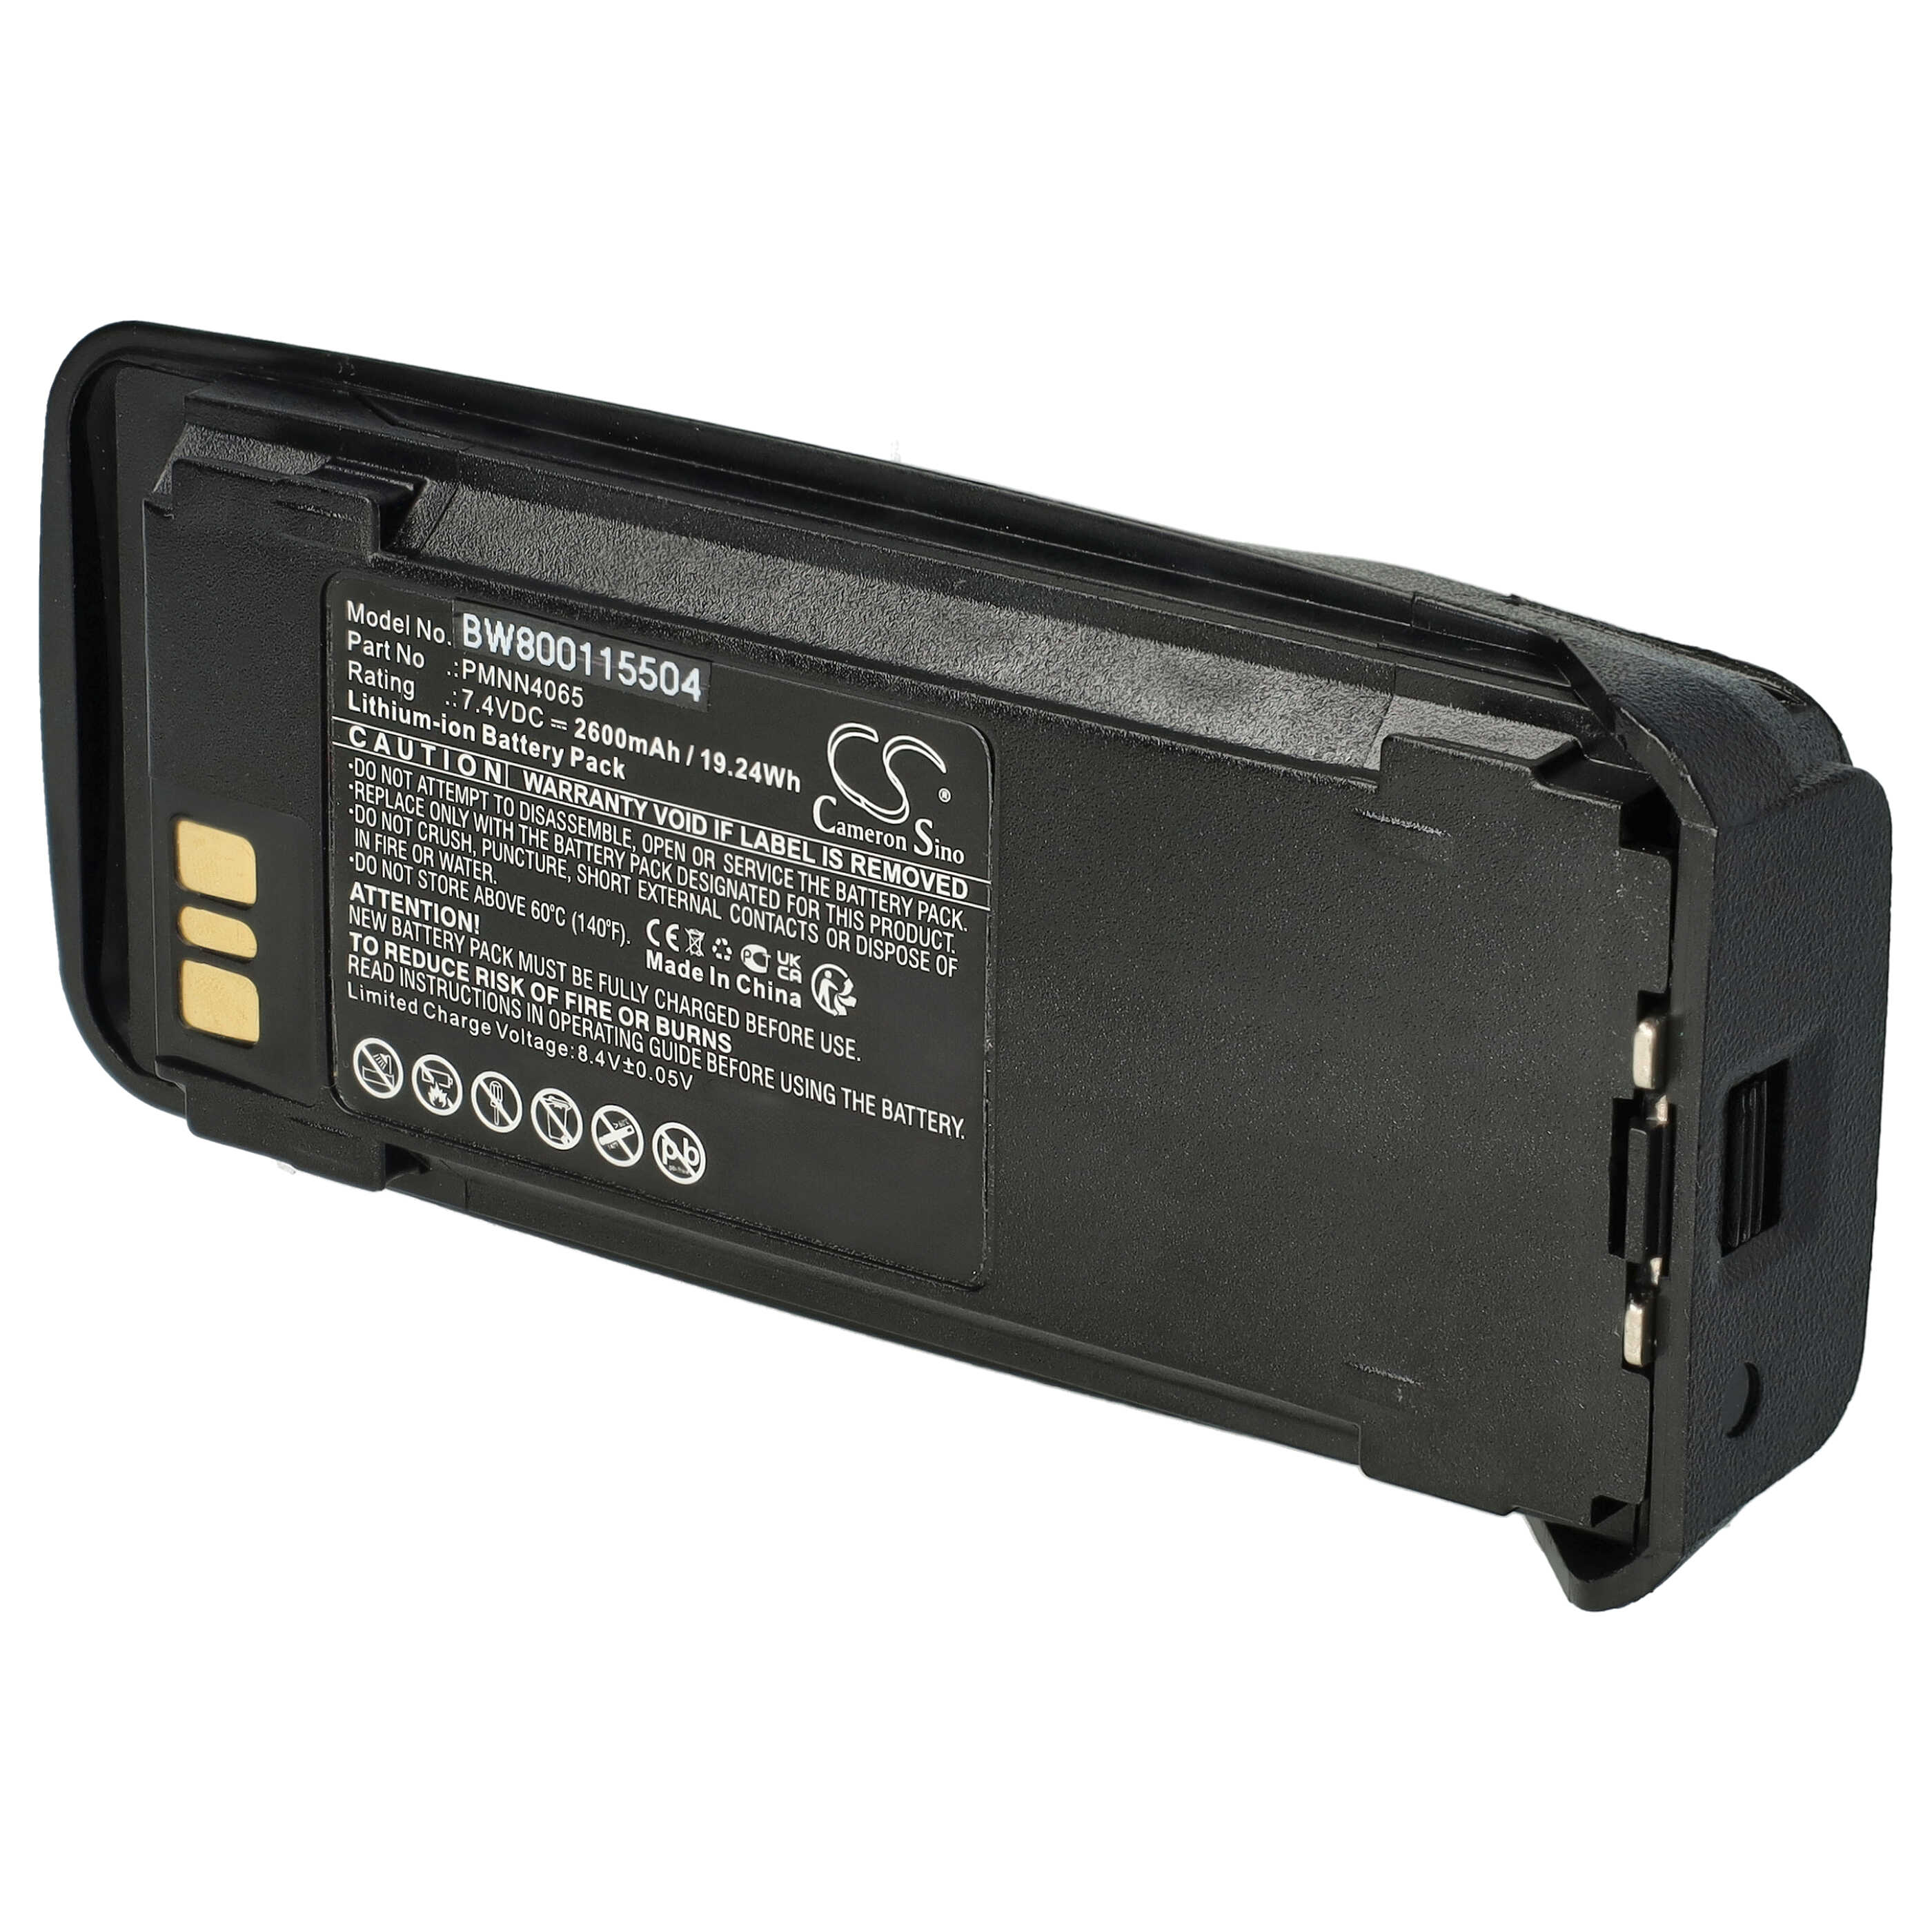 Batterie remplace Motorola NNTN4066, NNTN4077, NNTN4103 pour radio talkie-walkie - 2600mAh 7,4V Li-ion